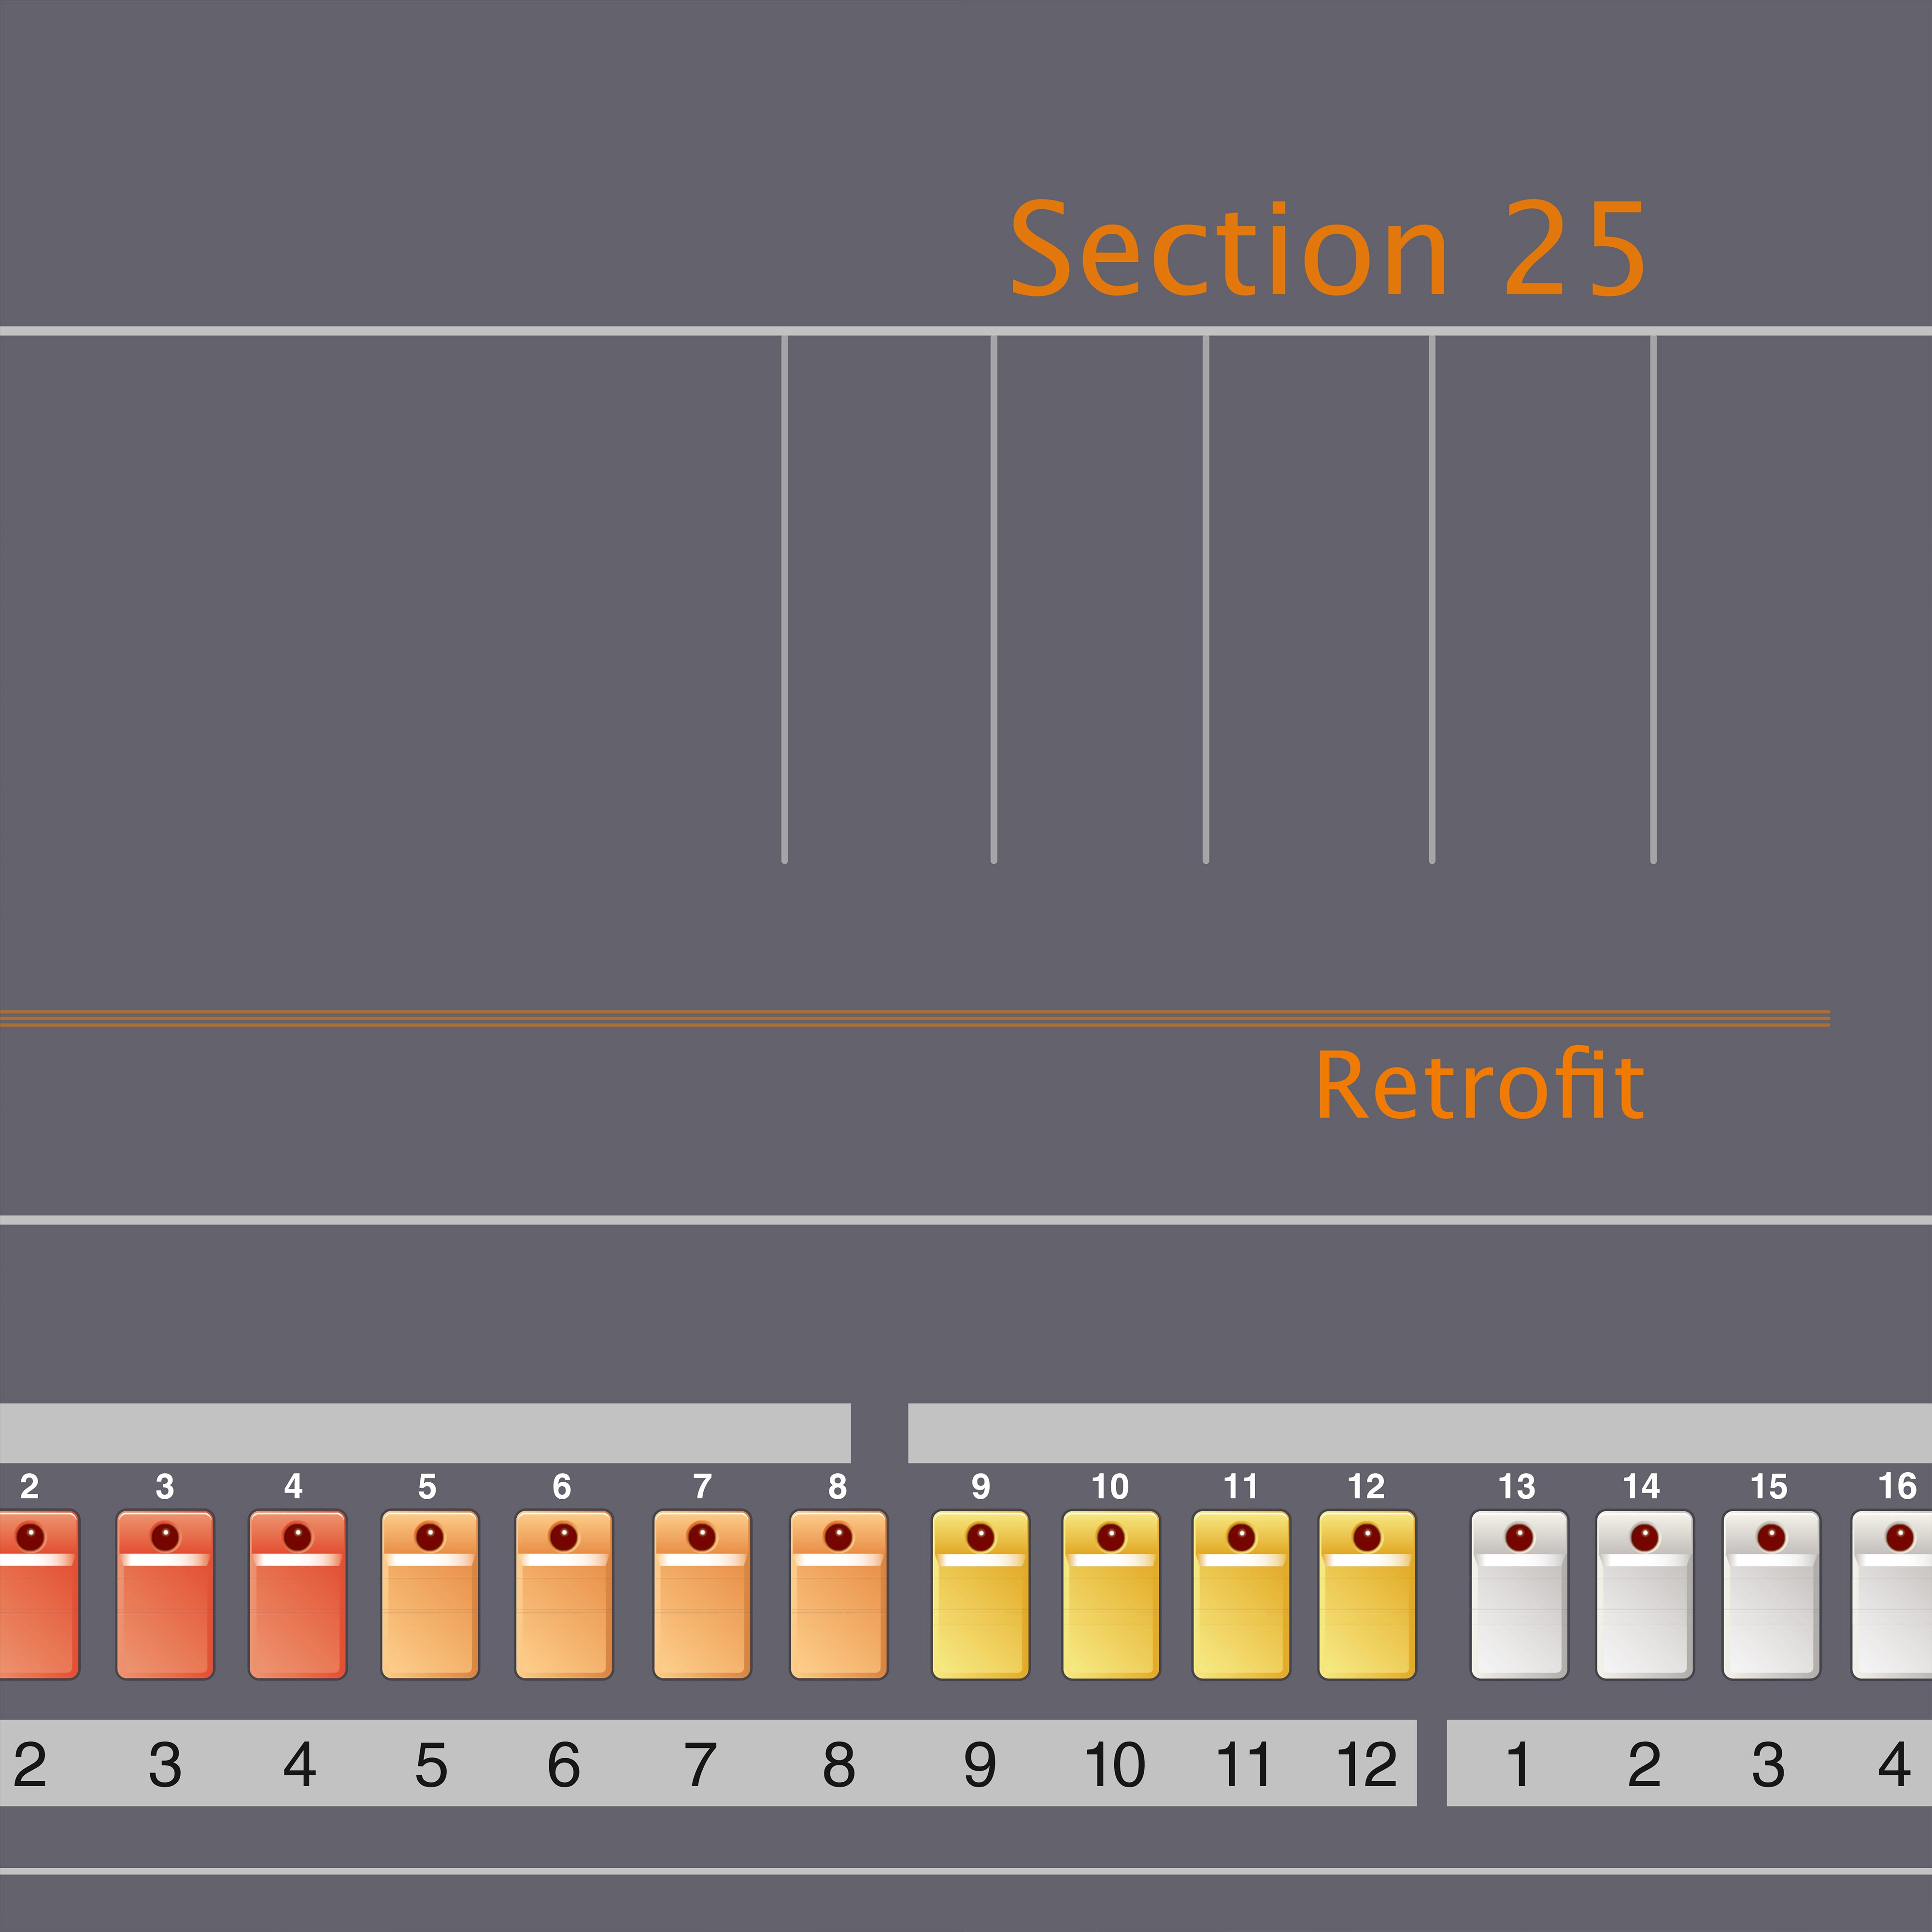 Section 25 - Retrofit